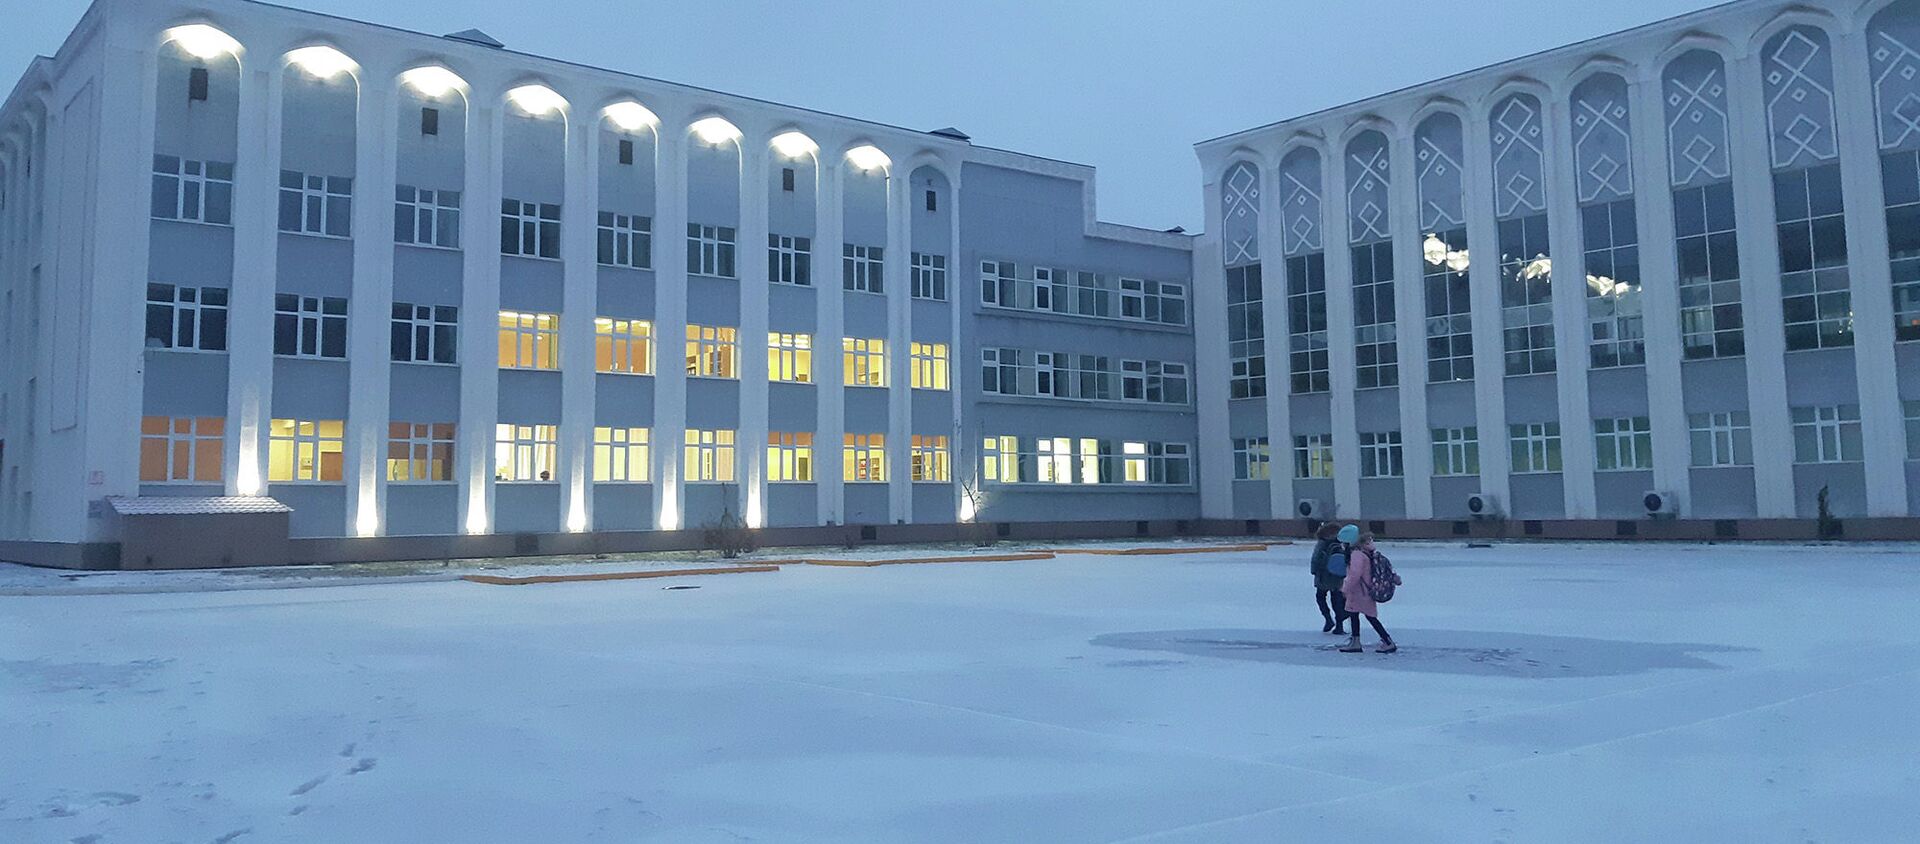 Дети утром зимой идут в школу - архивное фото - Sputnik Казахстан, 1920, 11.03.2021